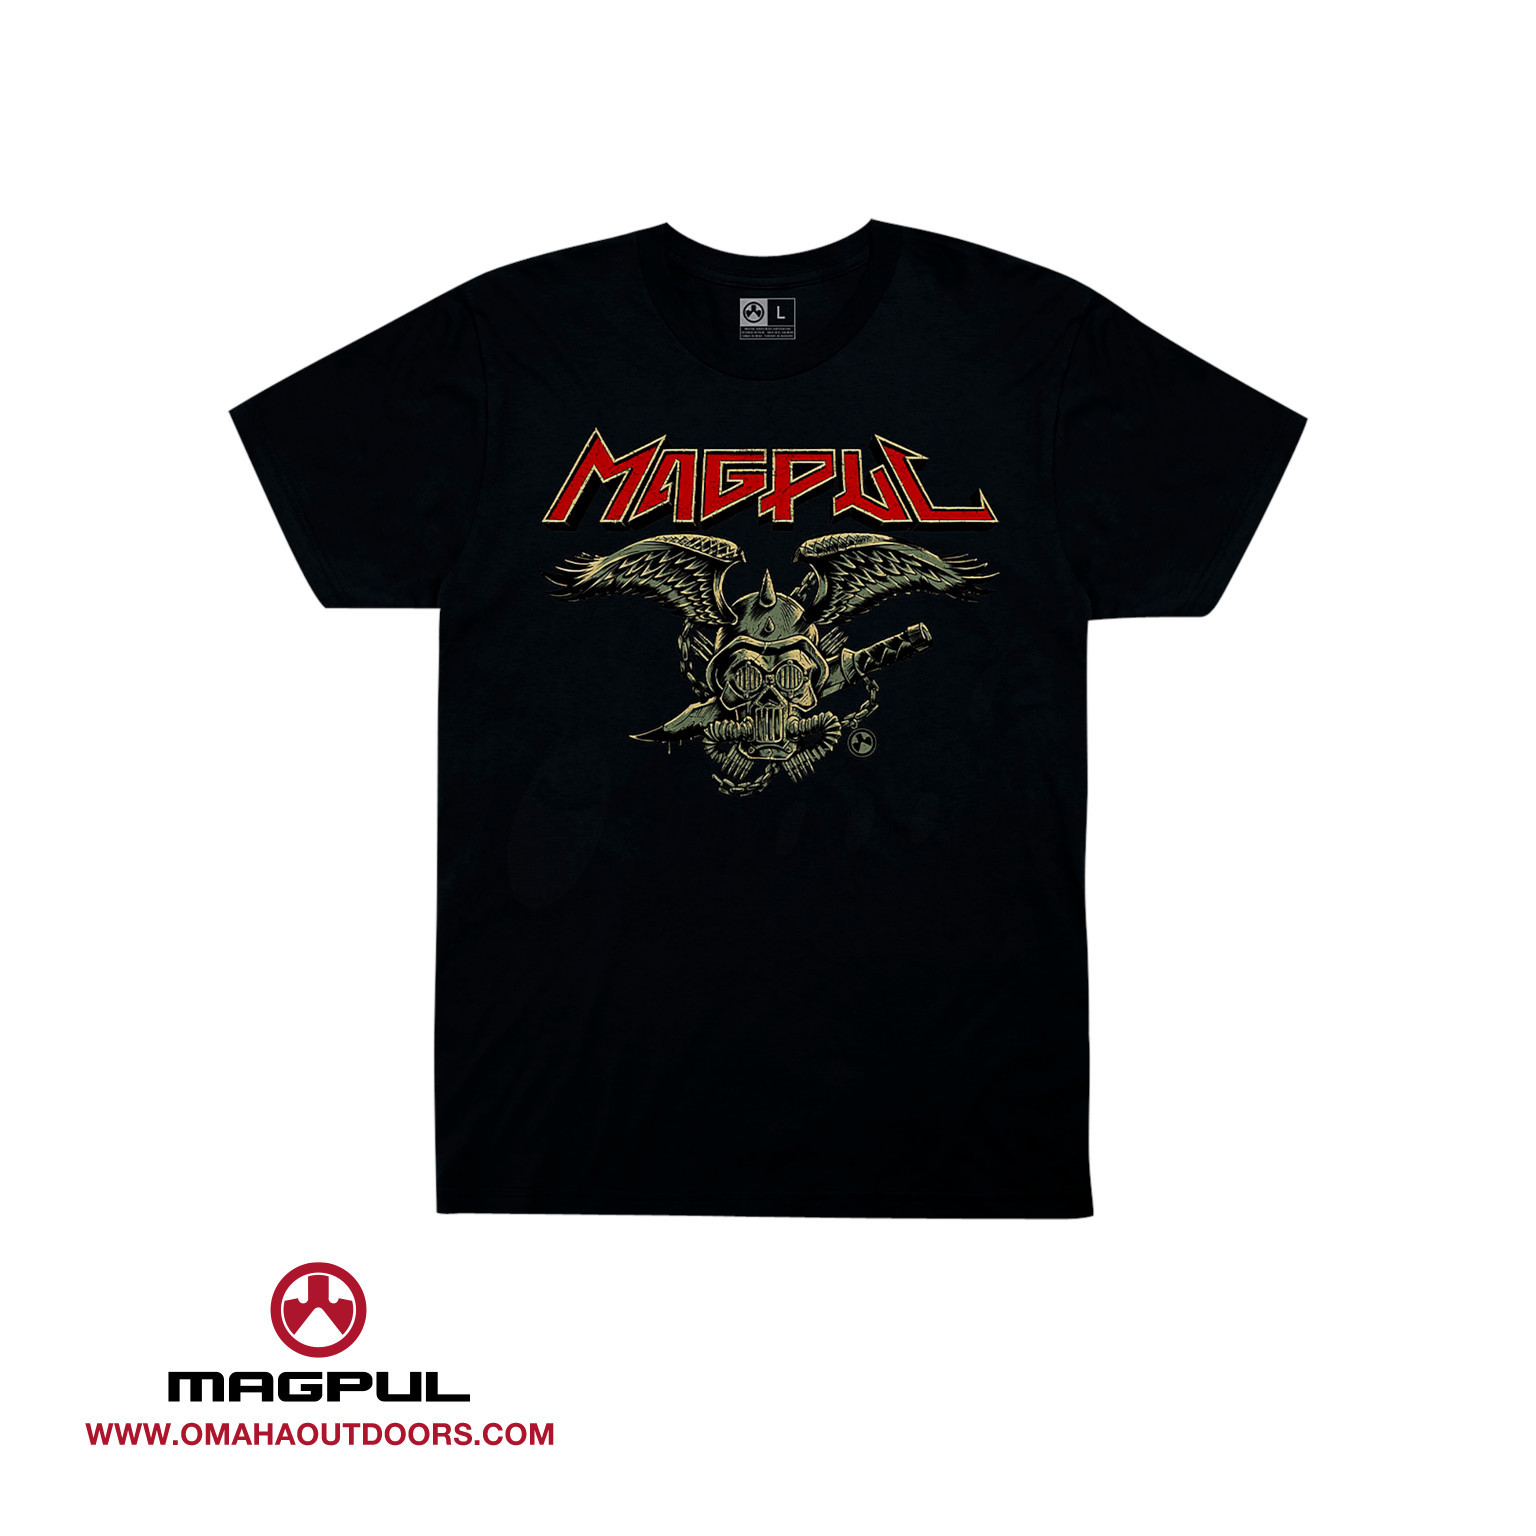 X-Large Mapgul Cotton Crew Neck T-Shirt for Men Unfair Advantage Black 